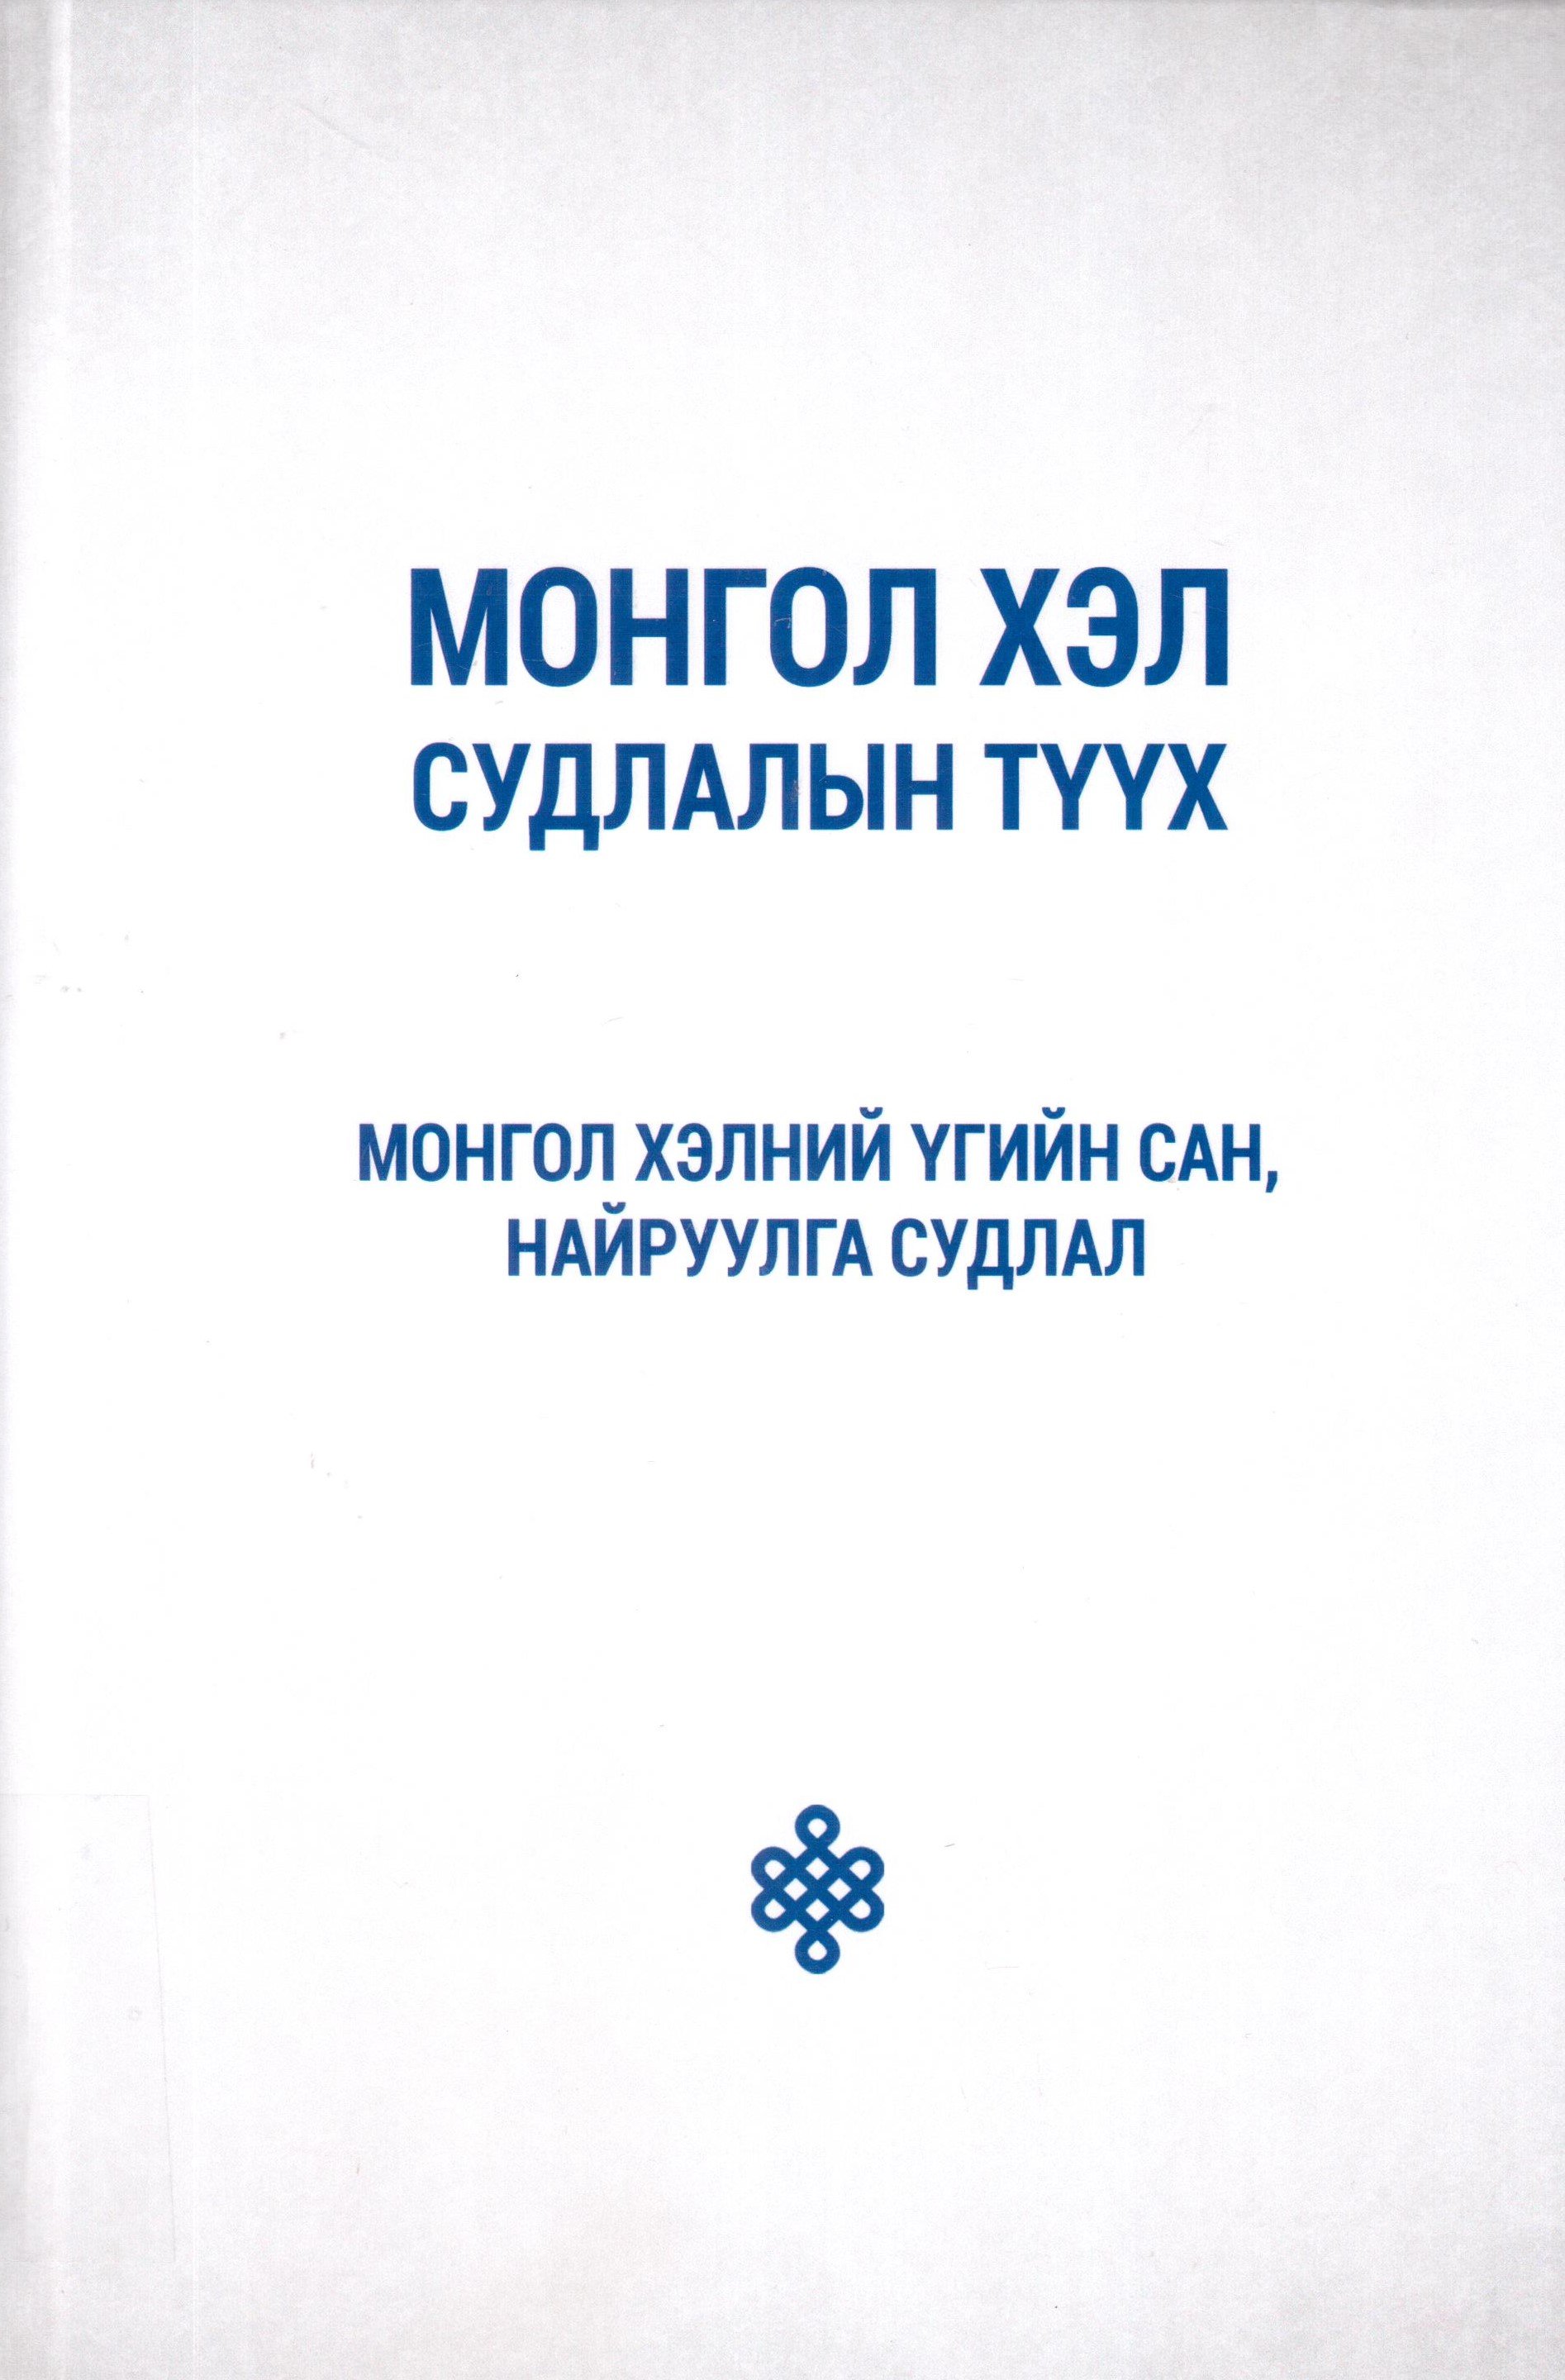 Монгол хэл судлалын түүх